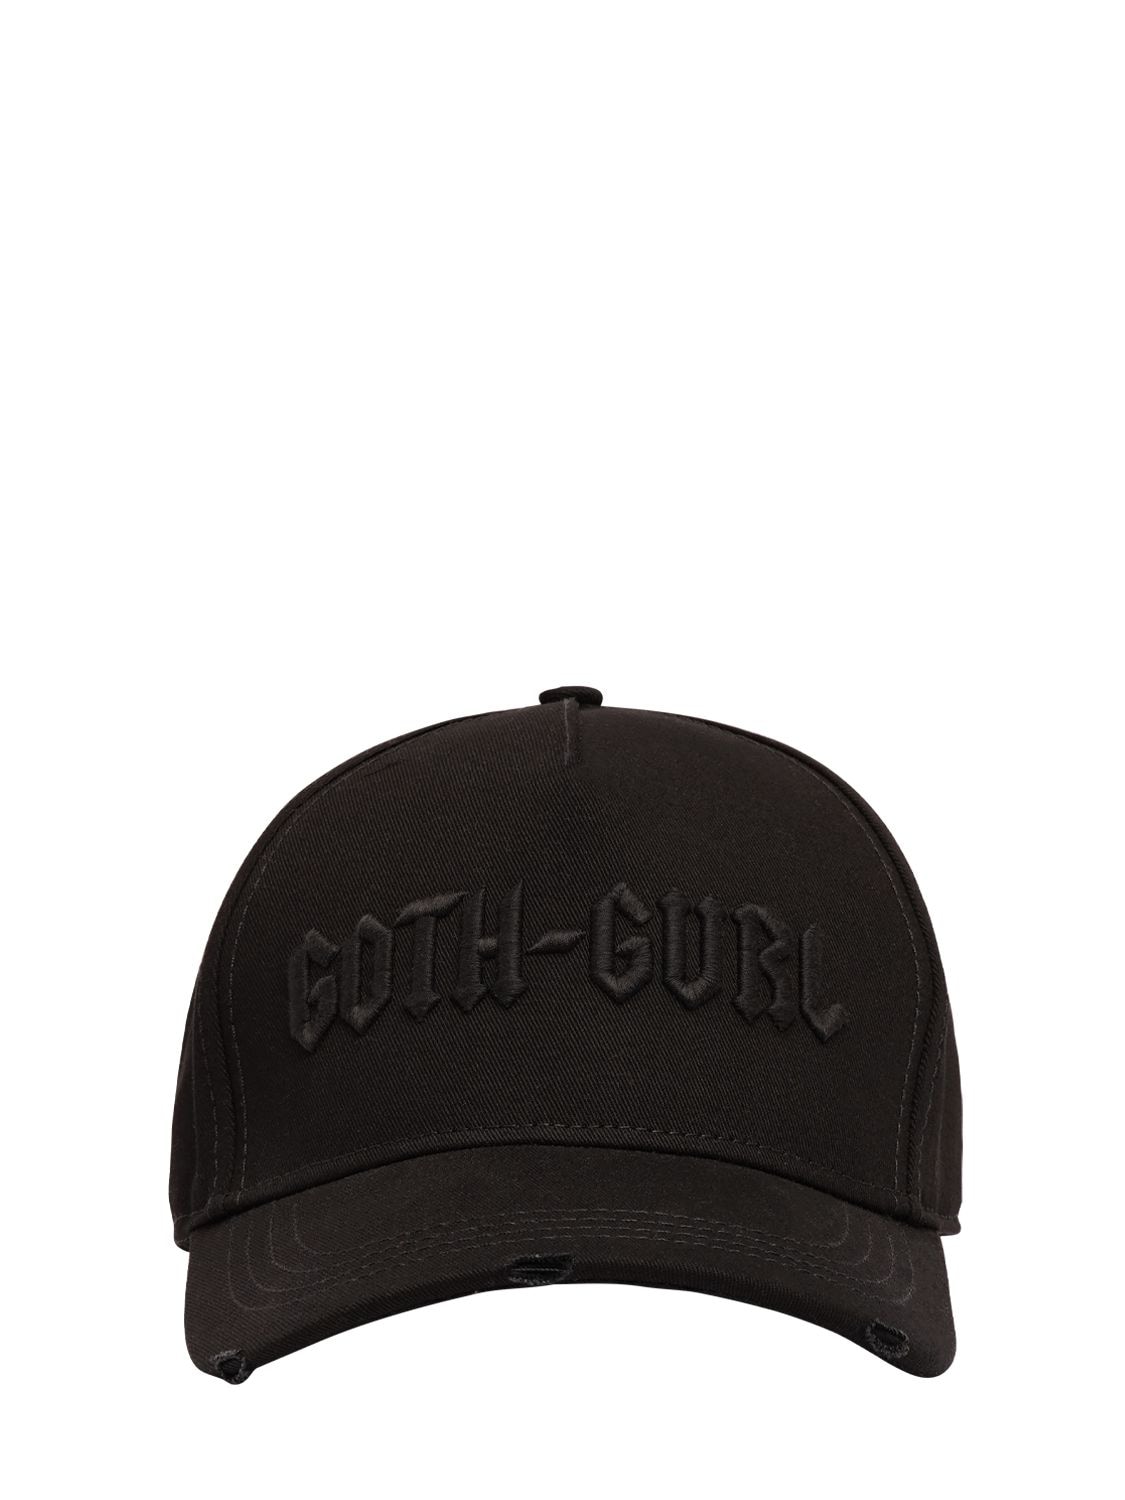 Goth Gurl Cotton Baseball Cap – WOMEN > ACCESSORIES > HATS